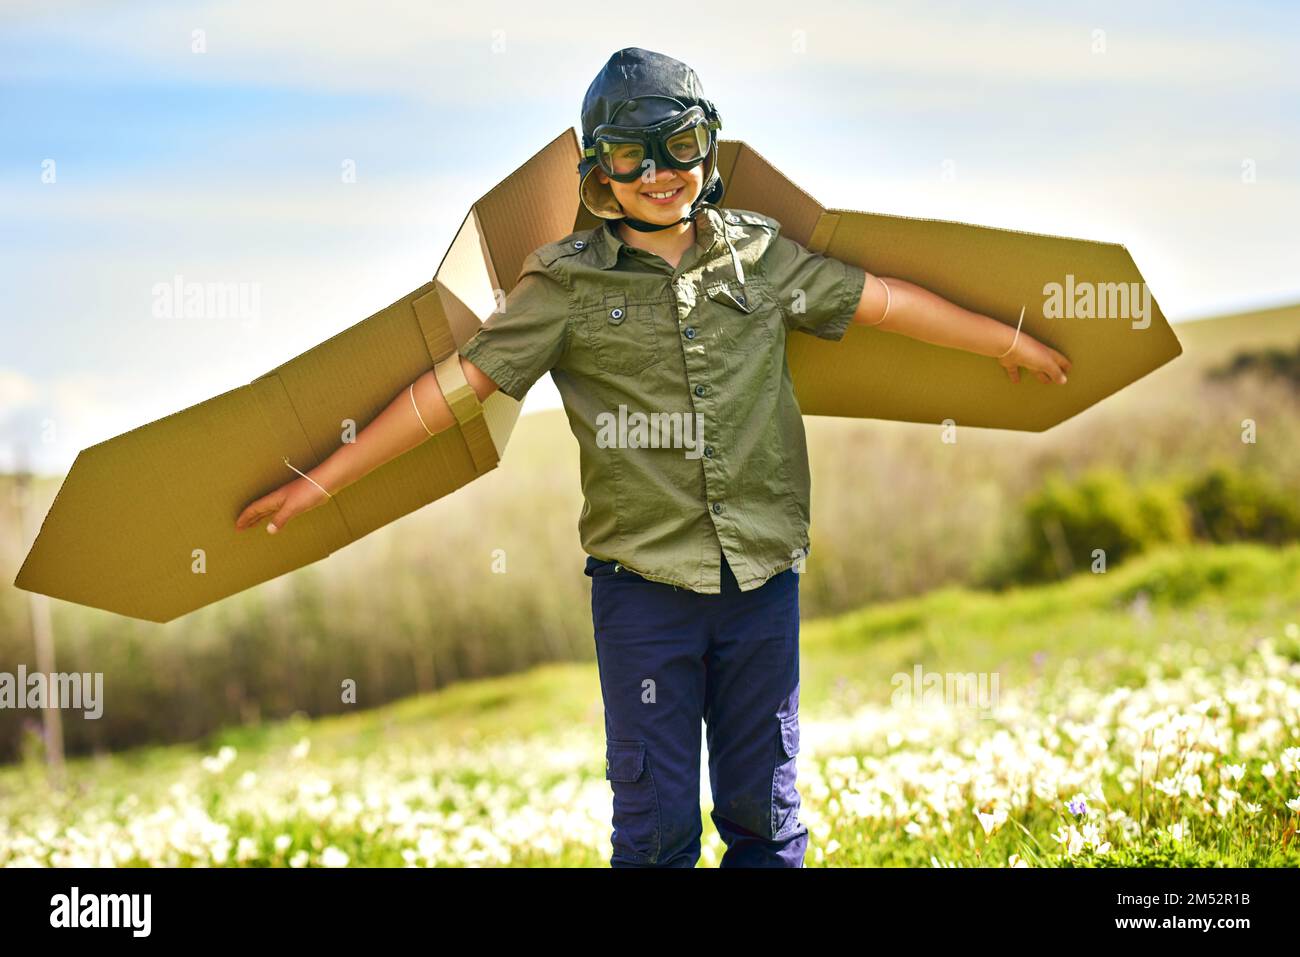 Décollage sur les compagnies aériennes imagination. un petit garçon ludiques prétendant être un avion avec une paire d'ailes en carton. Banque D'Images